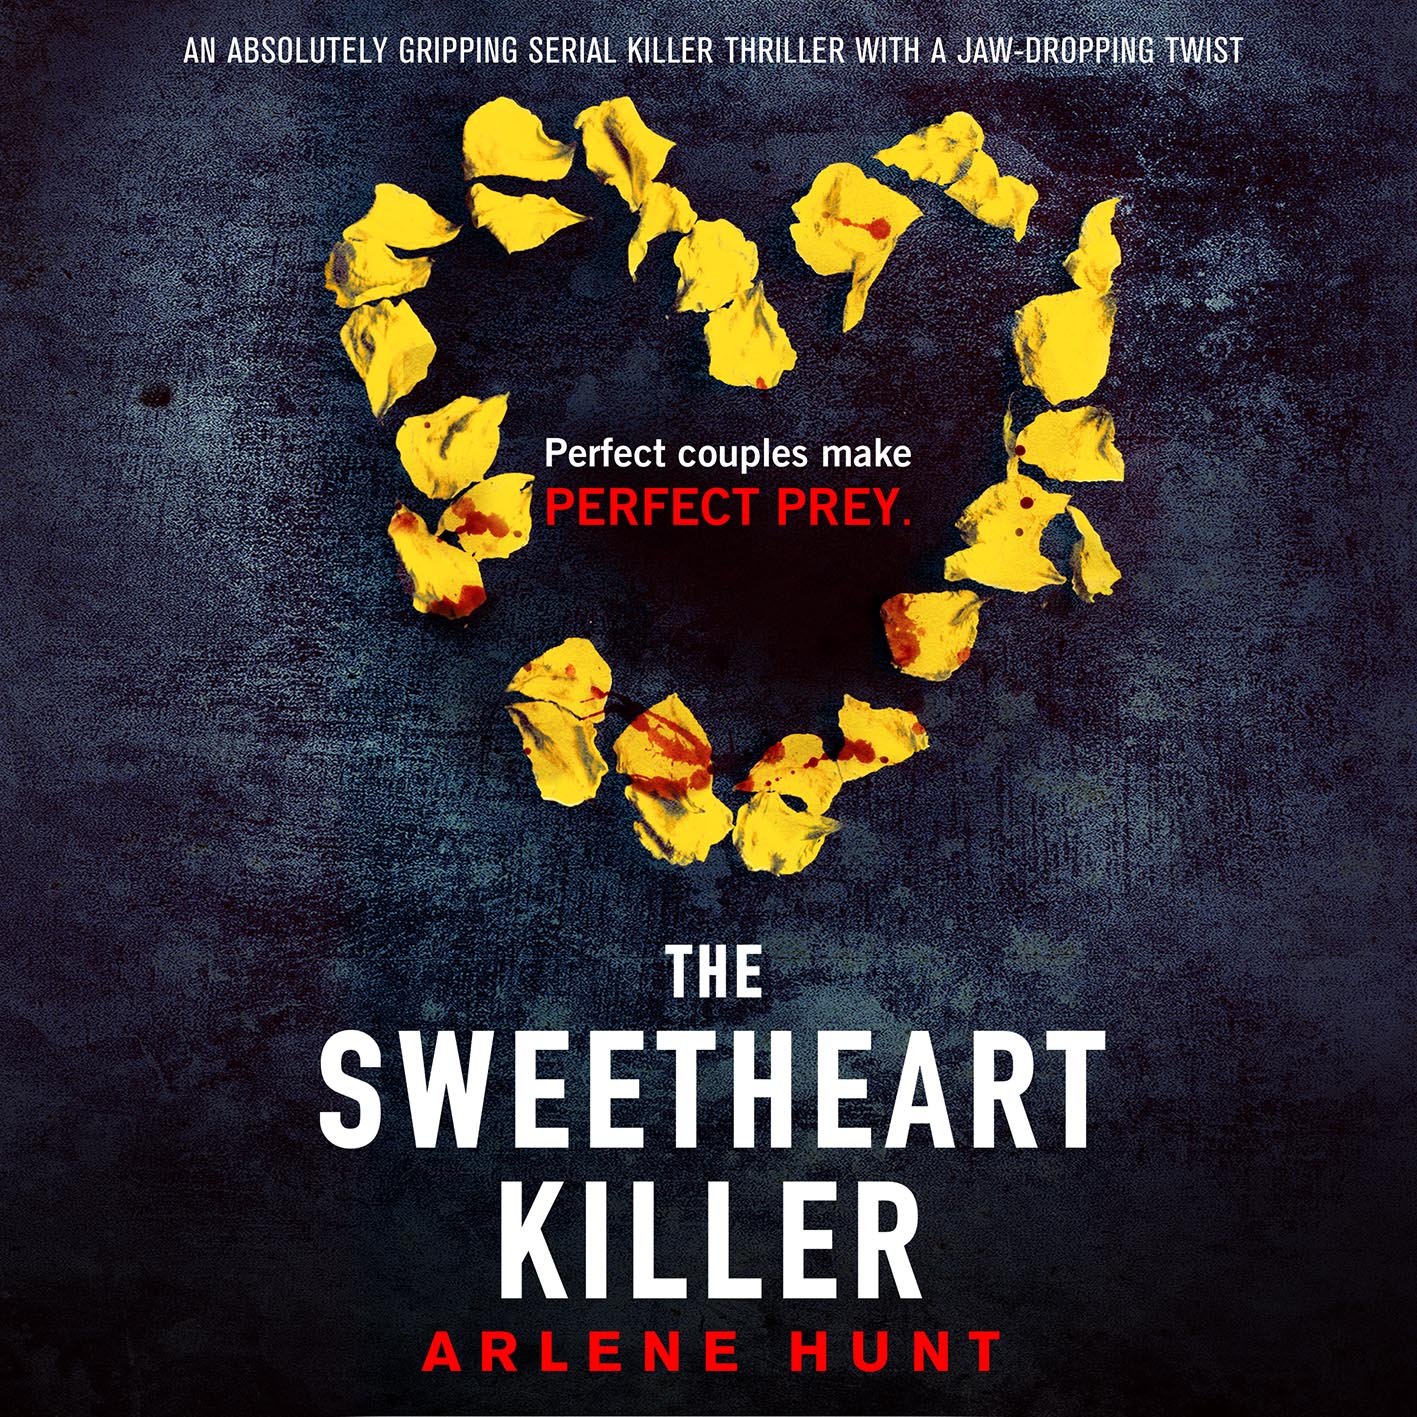 The Sweetheart Killer